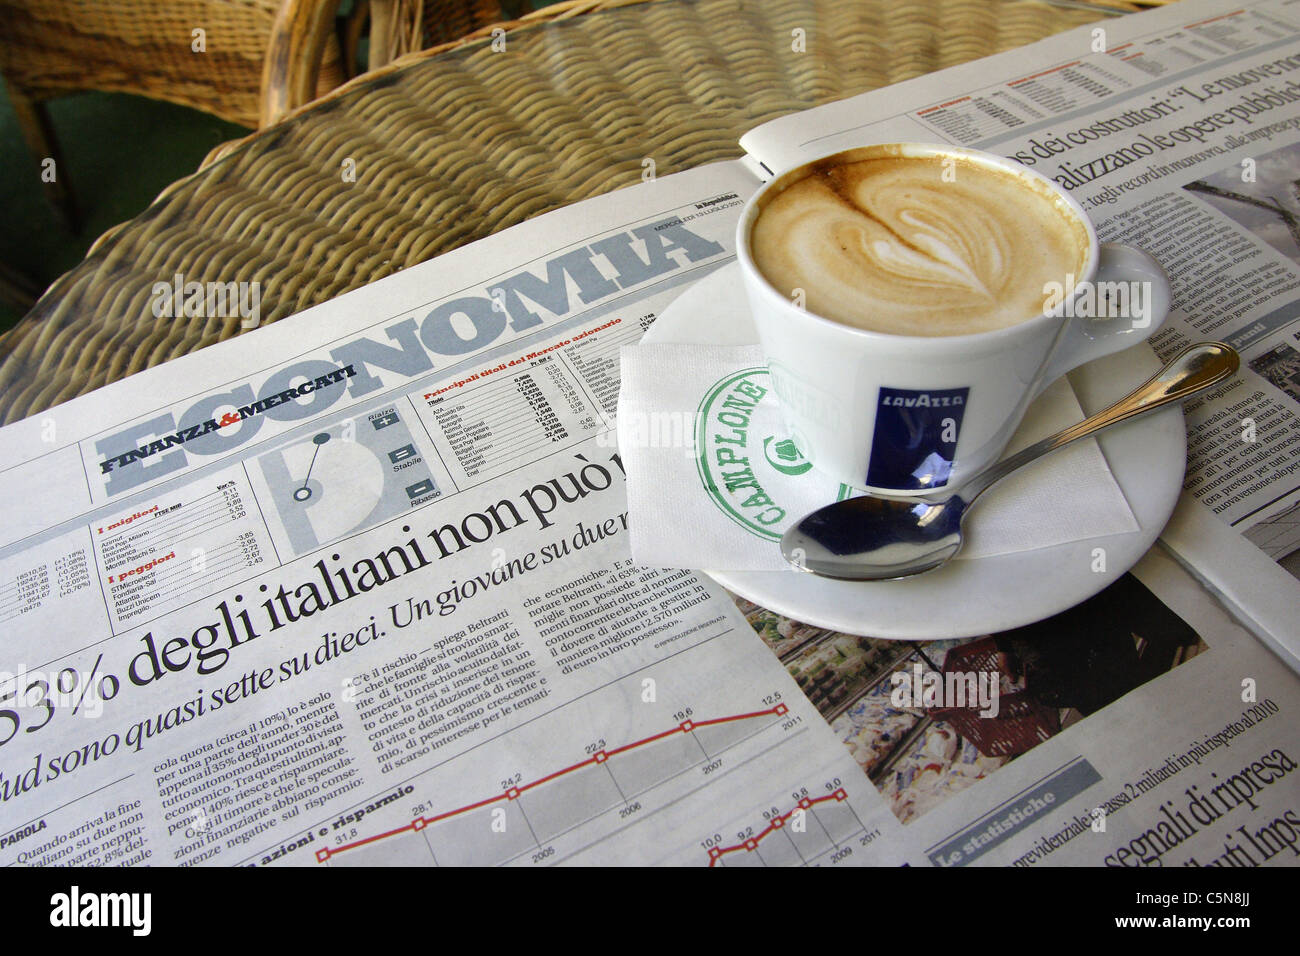 Un capuchino y un ejemplar del diario La Repubblica abre a la economía páginas en una cafetería en Italia Foto de stock